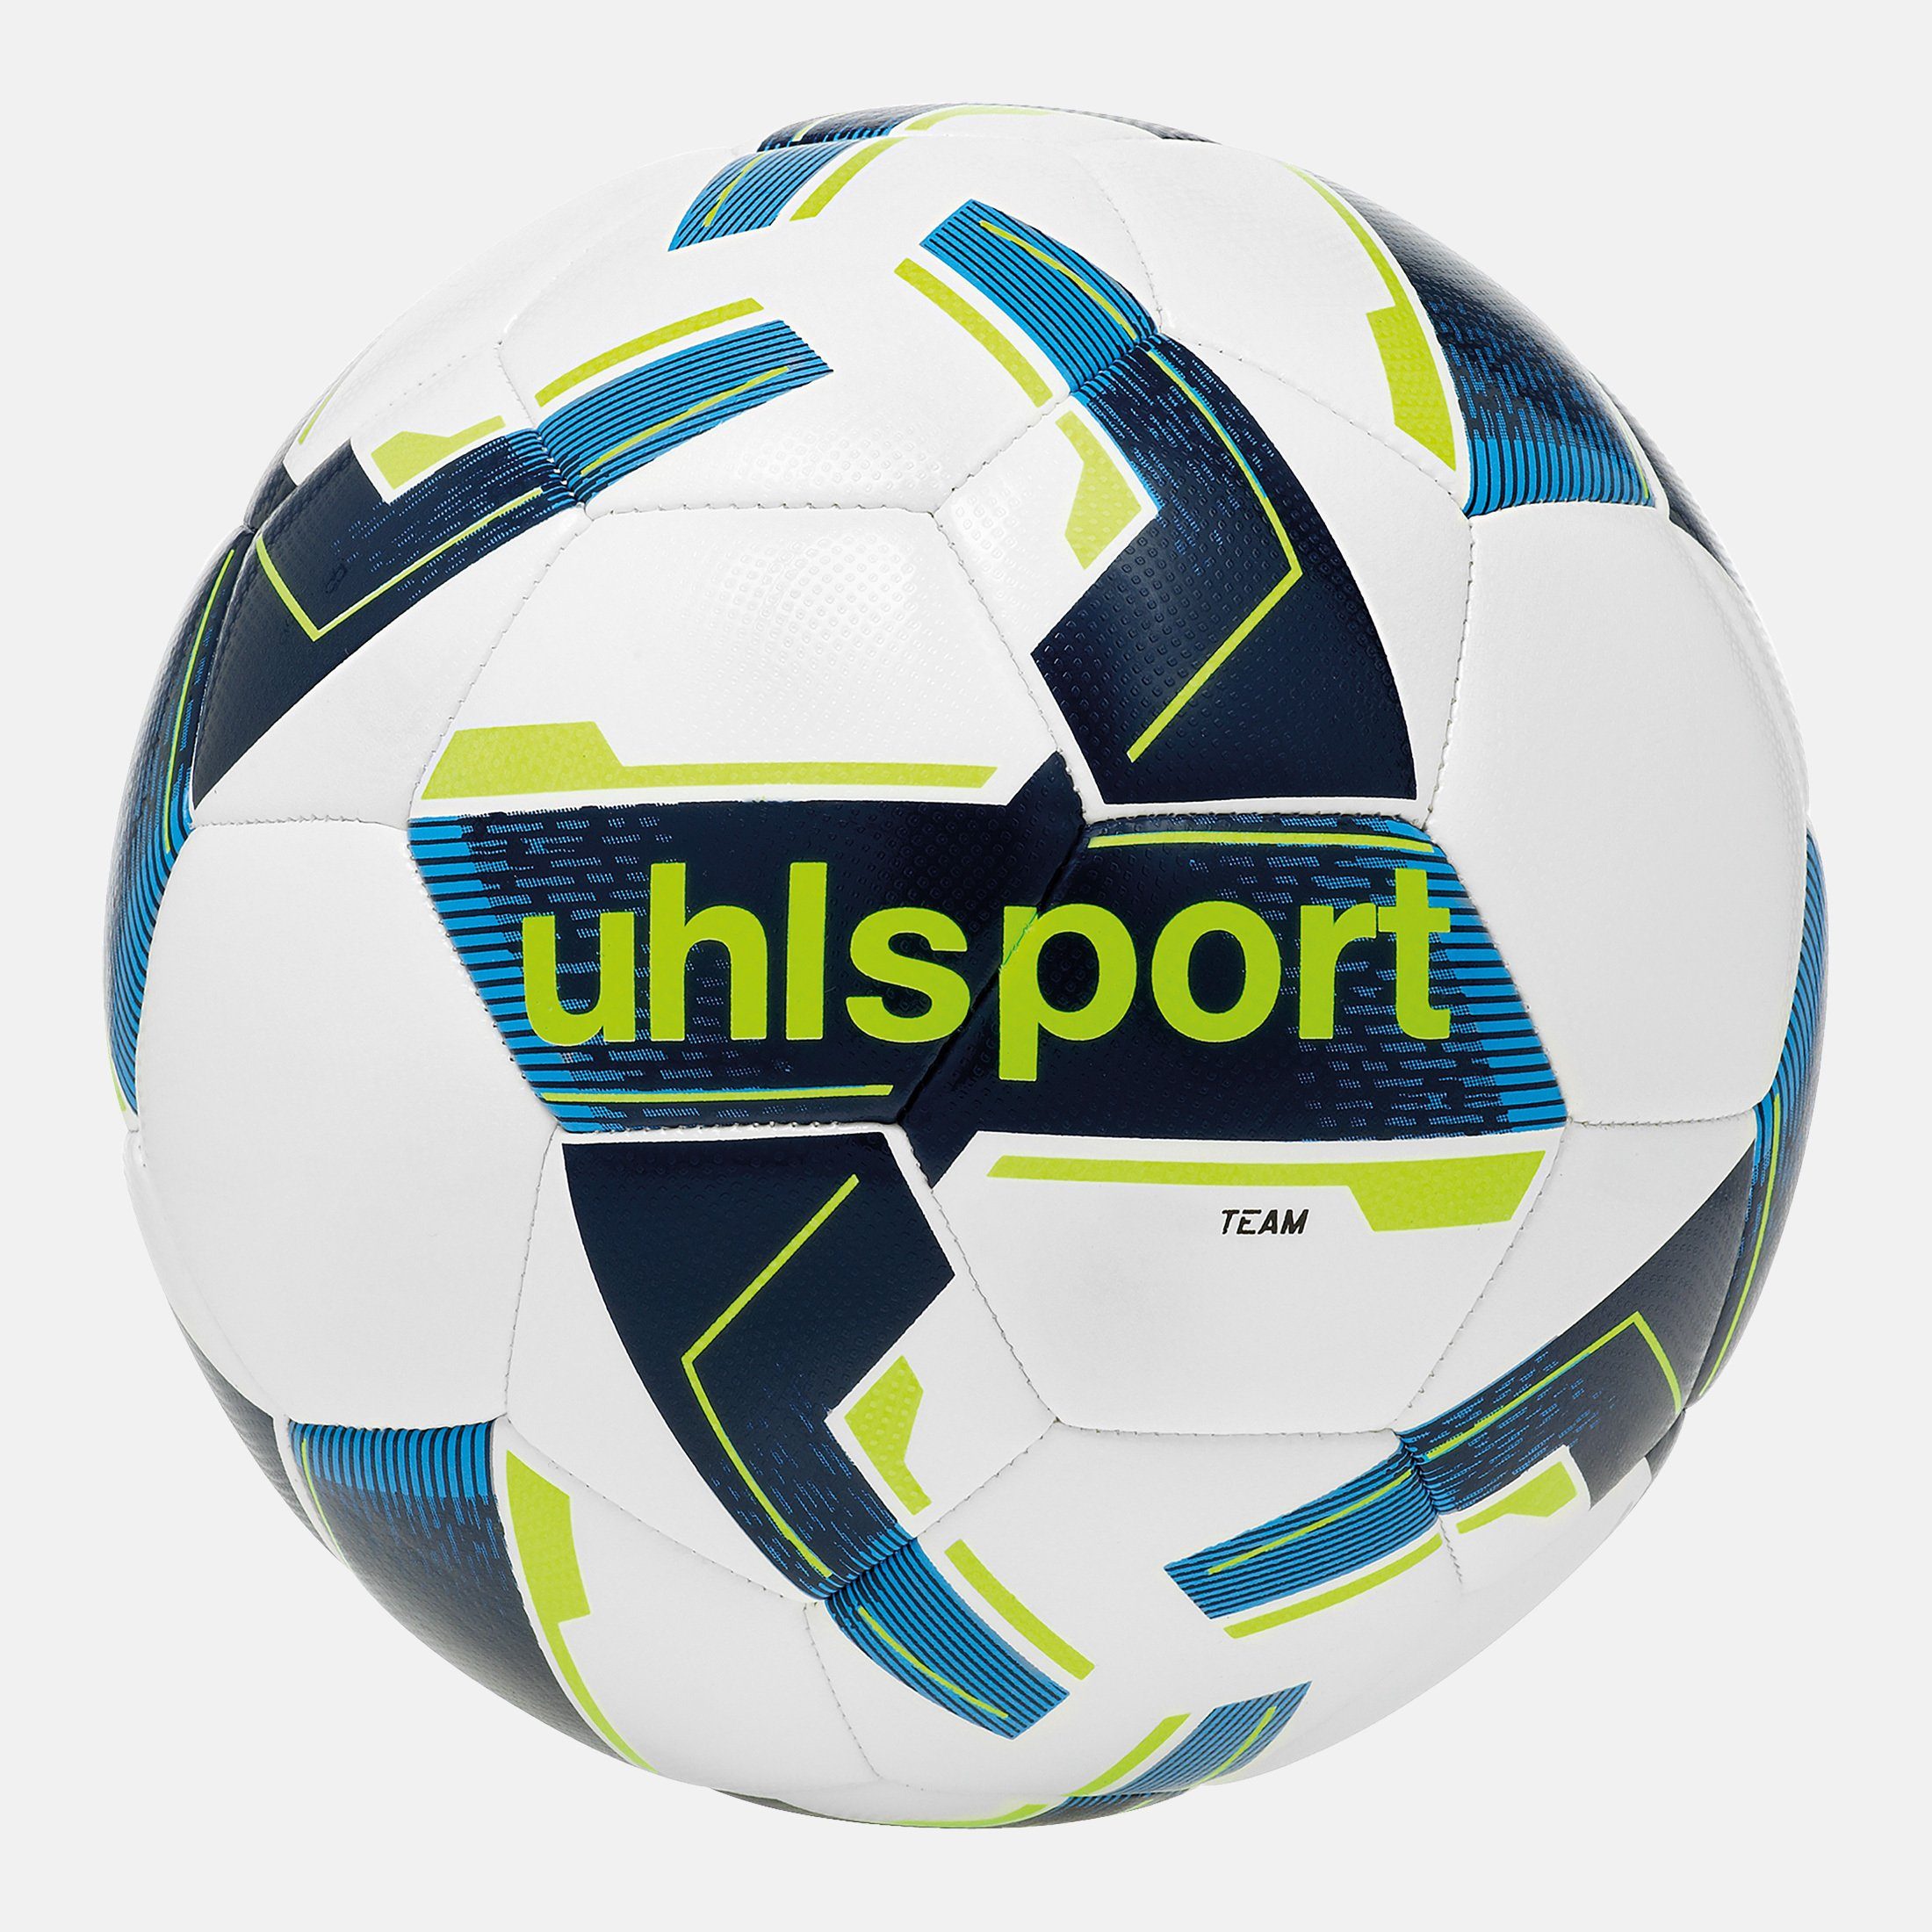 uhlsport TEAM Fußball Fußball weiß/marine/fluo uhlsport gelb